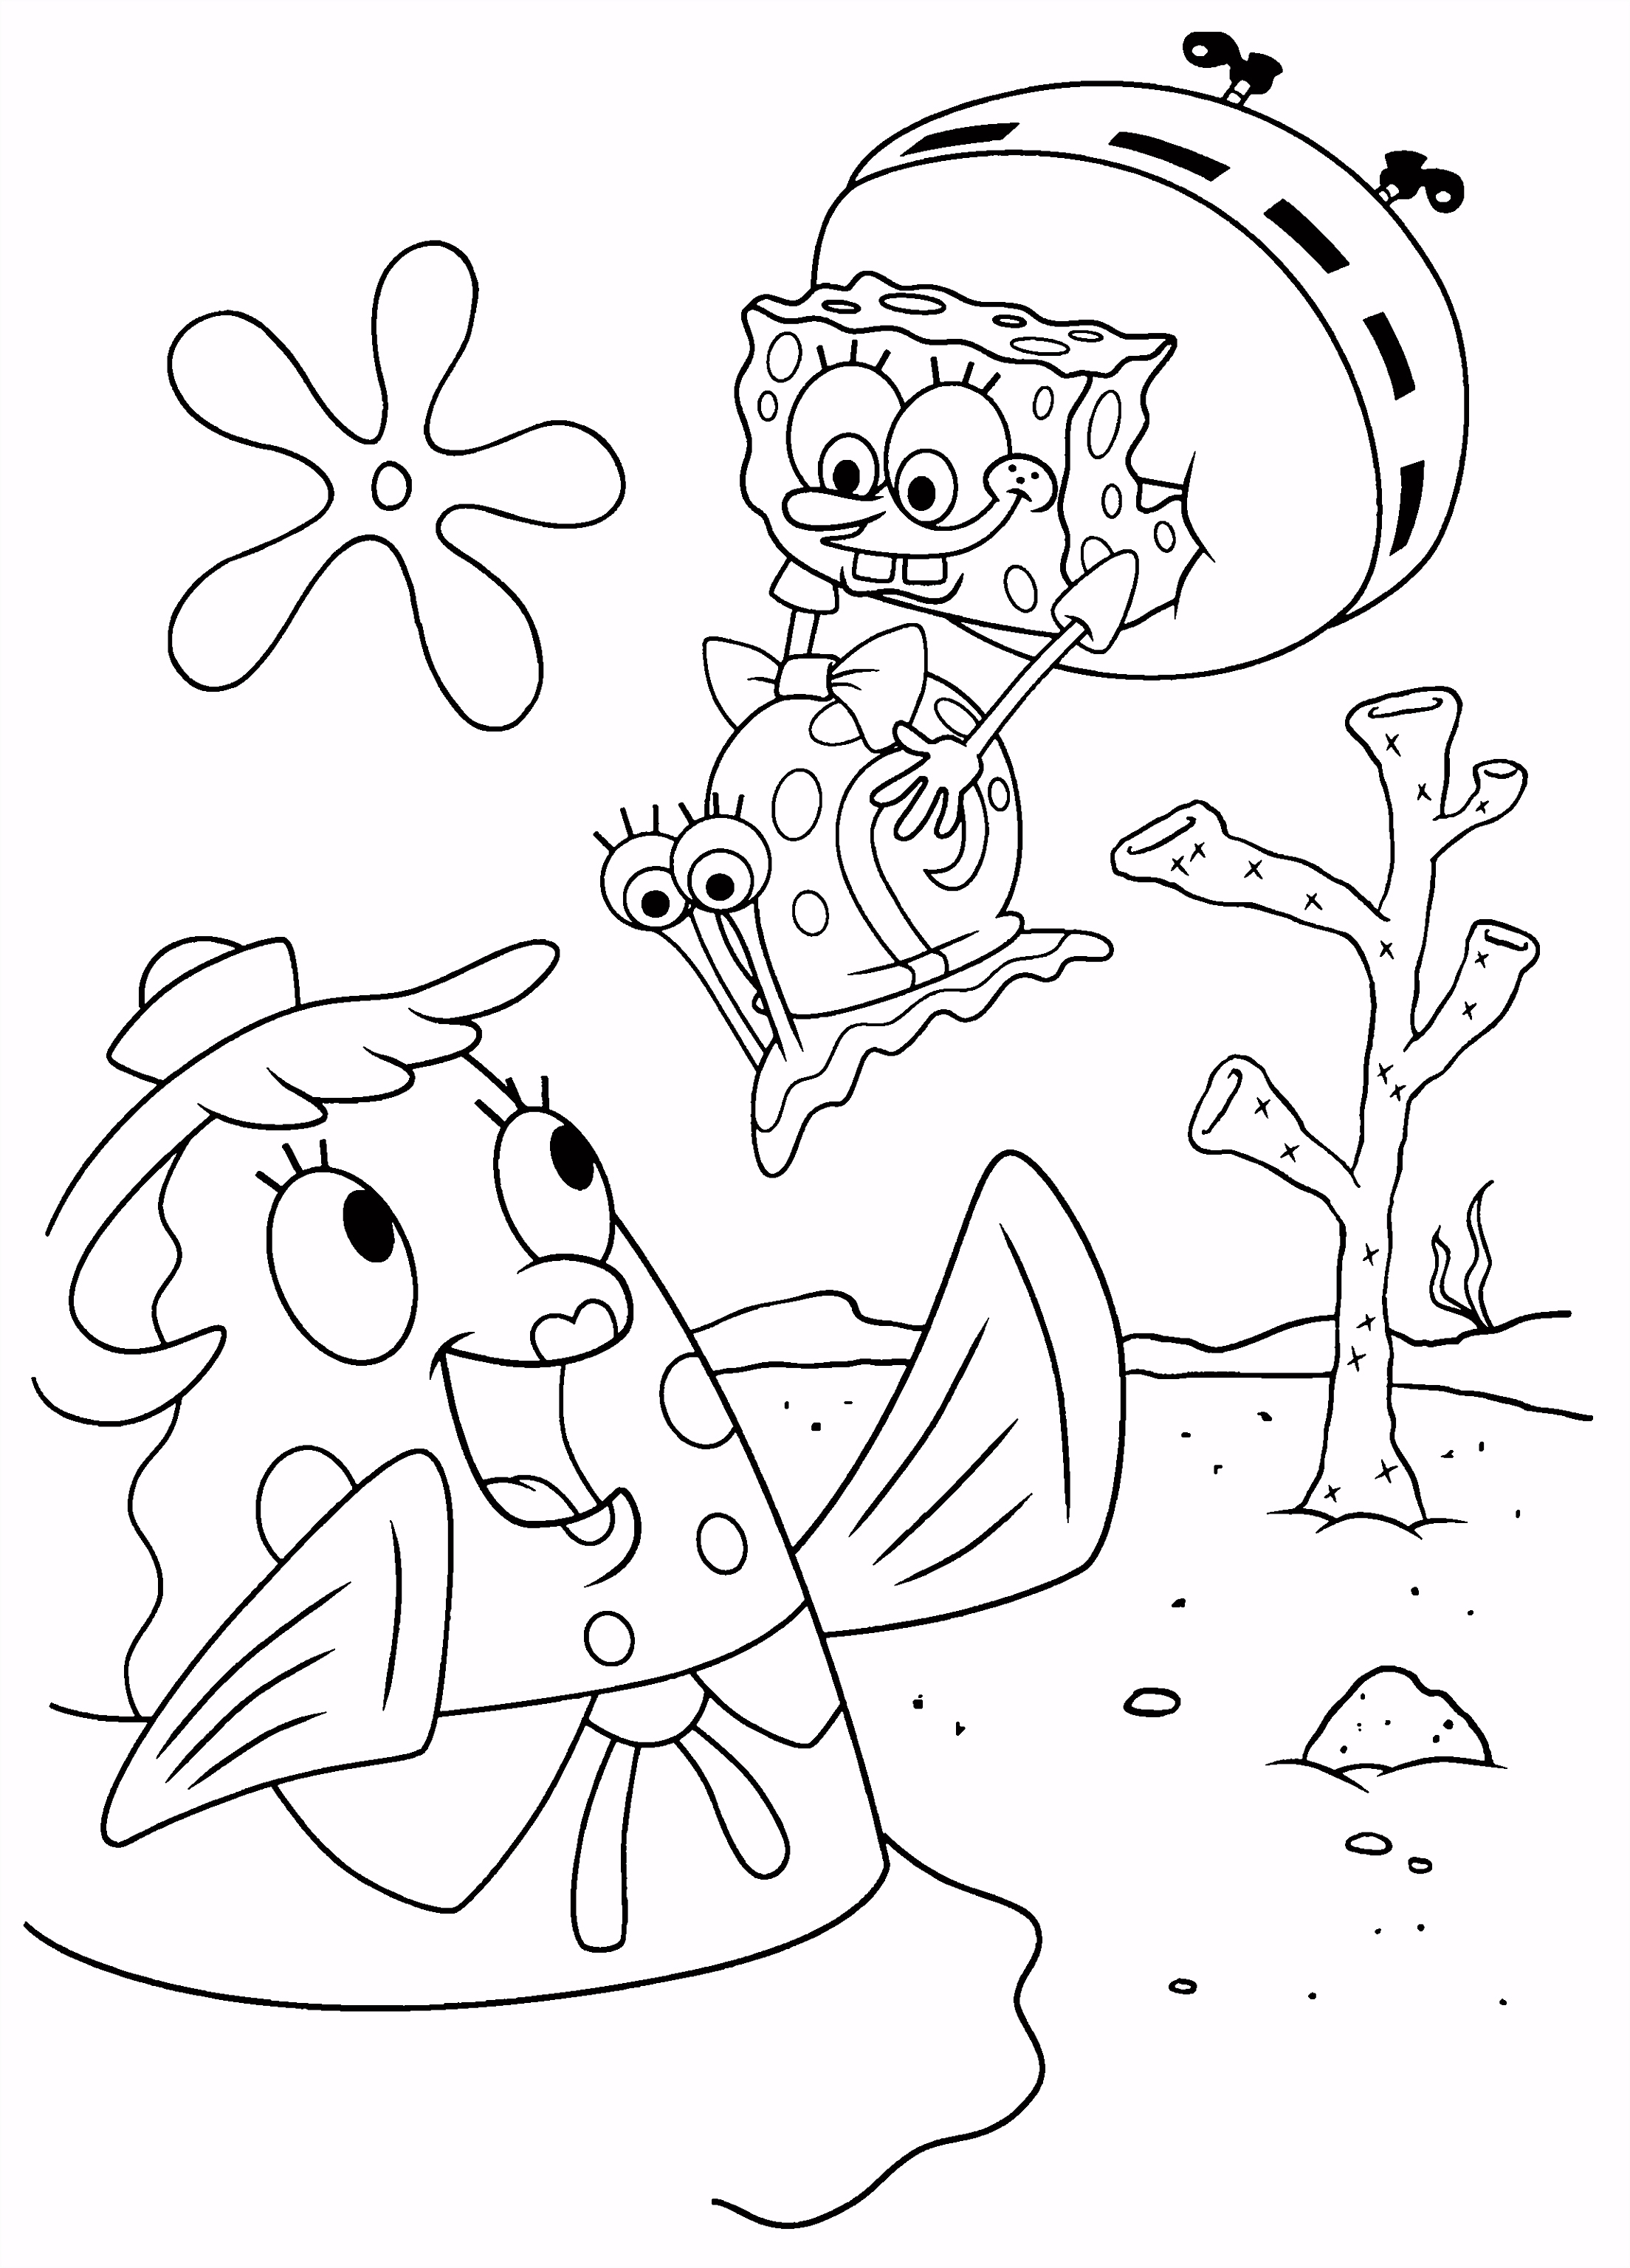 Kleurplaat Spongebob Gerrit Leuk Voor Kids Spongebob Met Gerrit